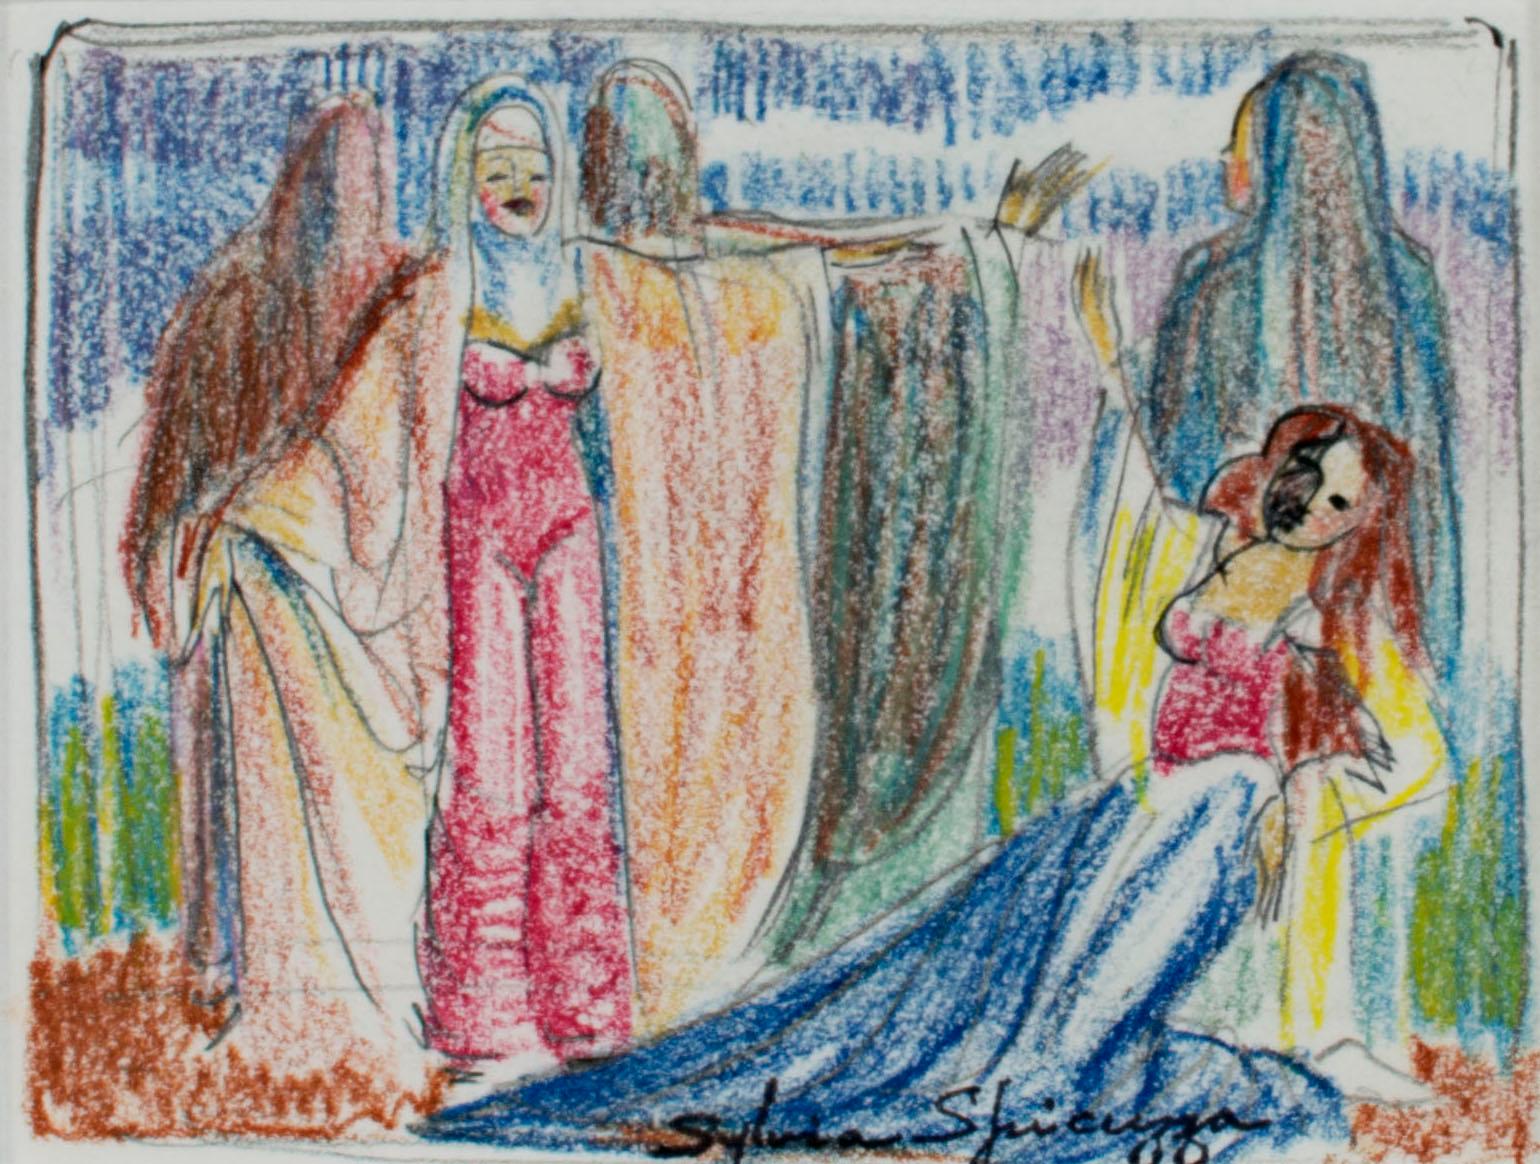 Auf dieser Zeichnung präsentiert Sylvia Spicuzza dem Betrachter eine Szene aus dem Theater oder der Oper, die fünf Frauen auf der Bühne zeigt. Drei der Frauen stehen mit dem Rücken zum Betrachter, während eine im Vordergrund ihre Arme über eine